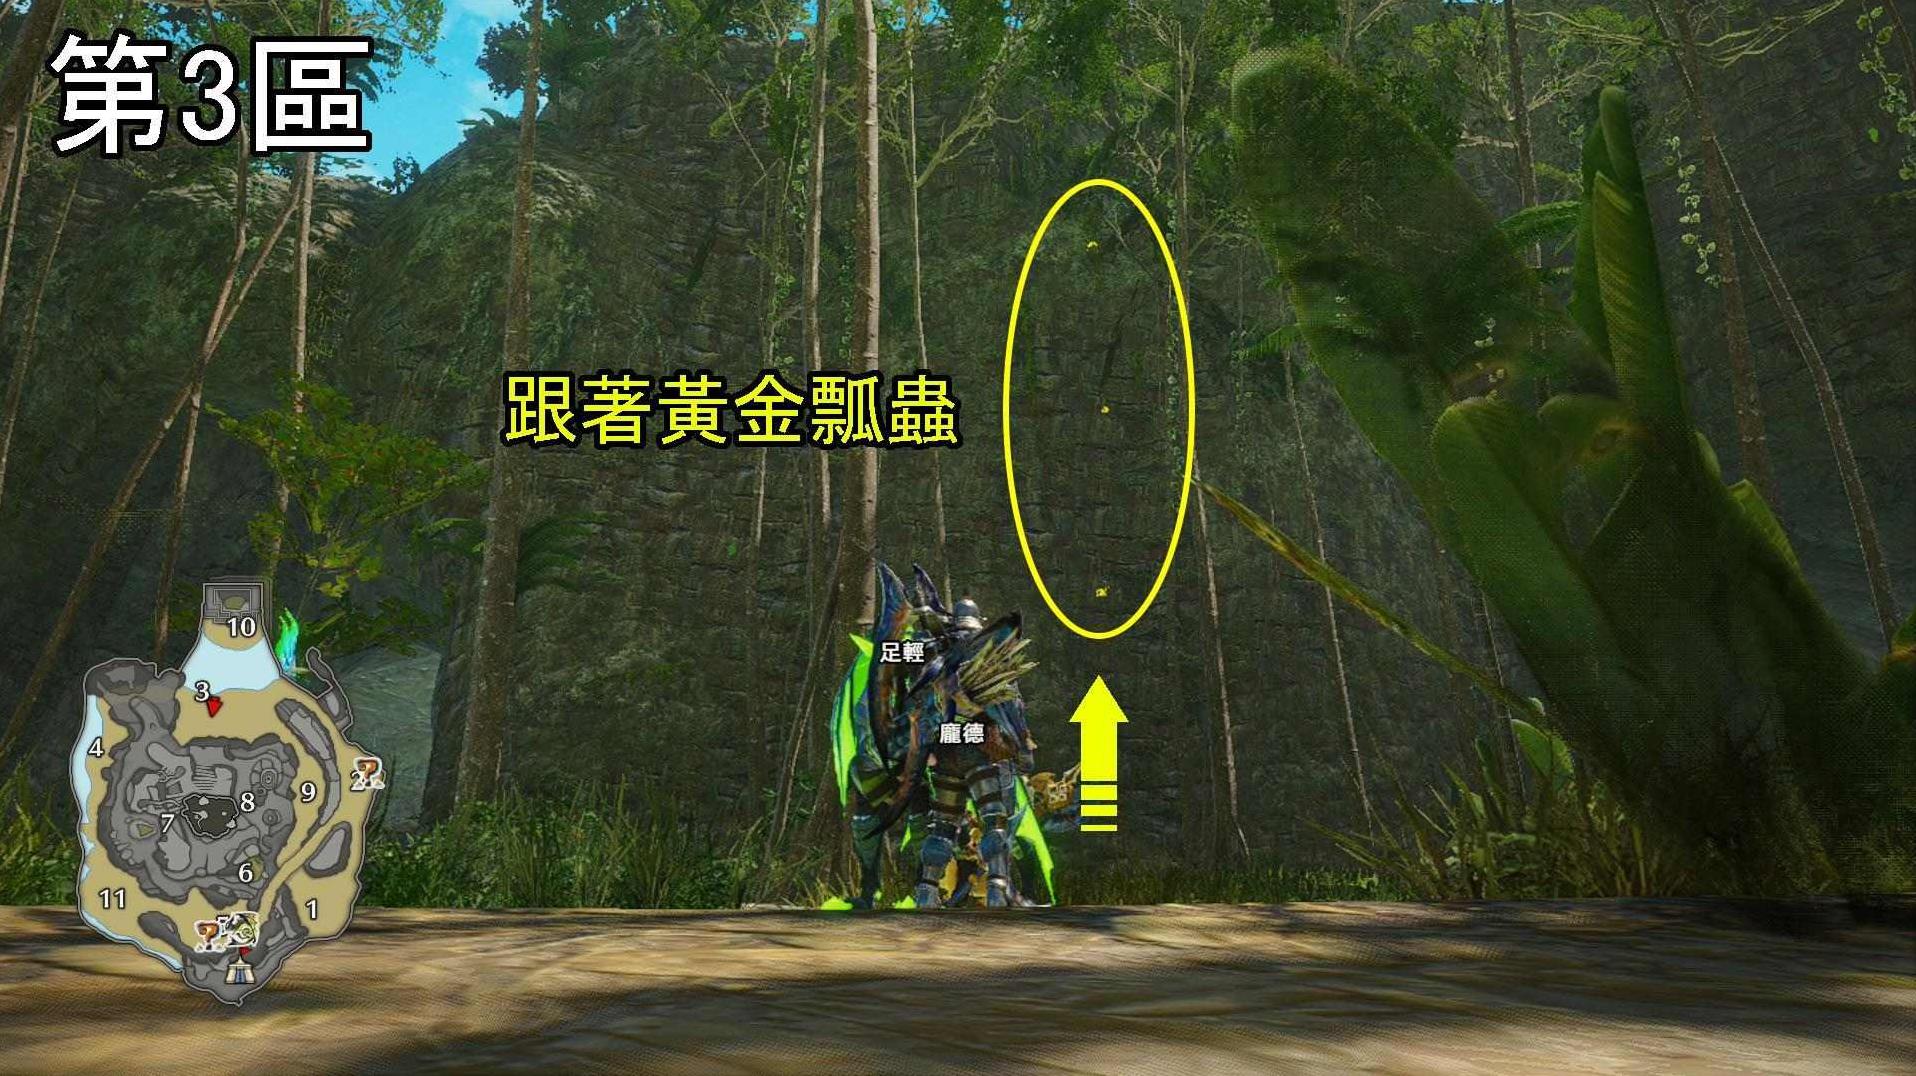 《怪物猎人崛起》曙光DLC密林环境生物与陷阱位置介绍 - 第1张